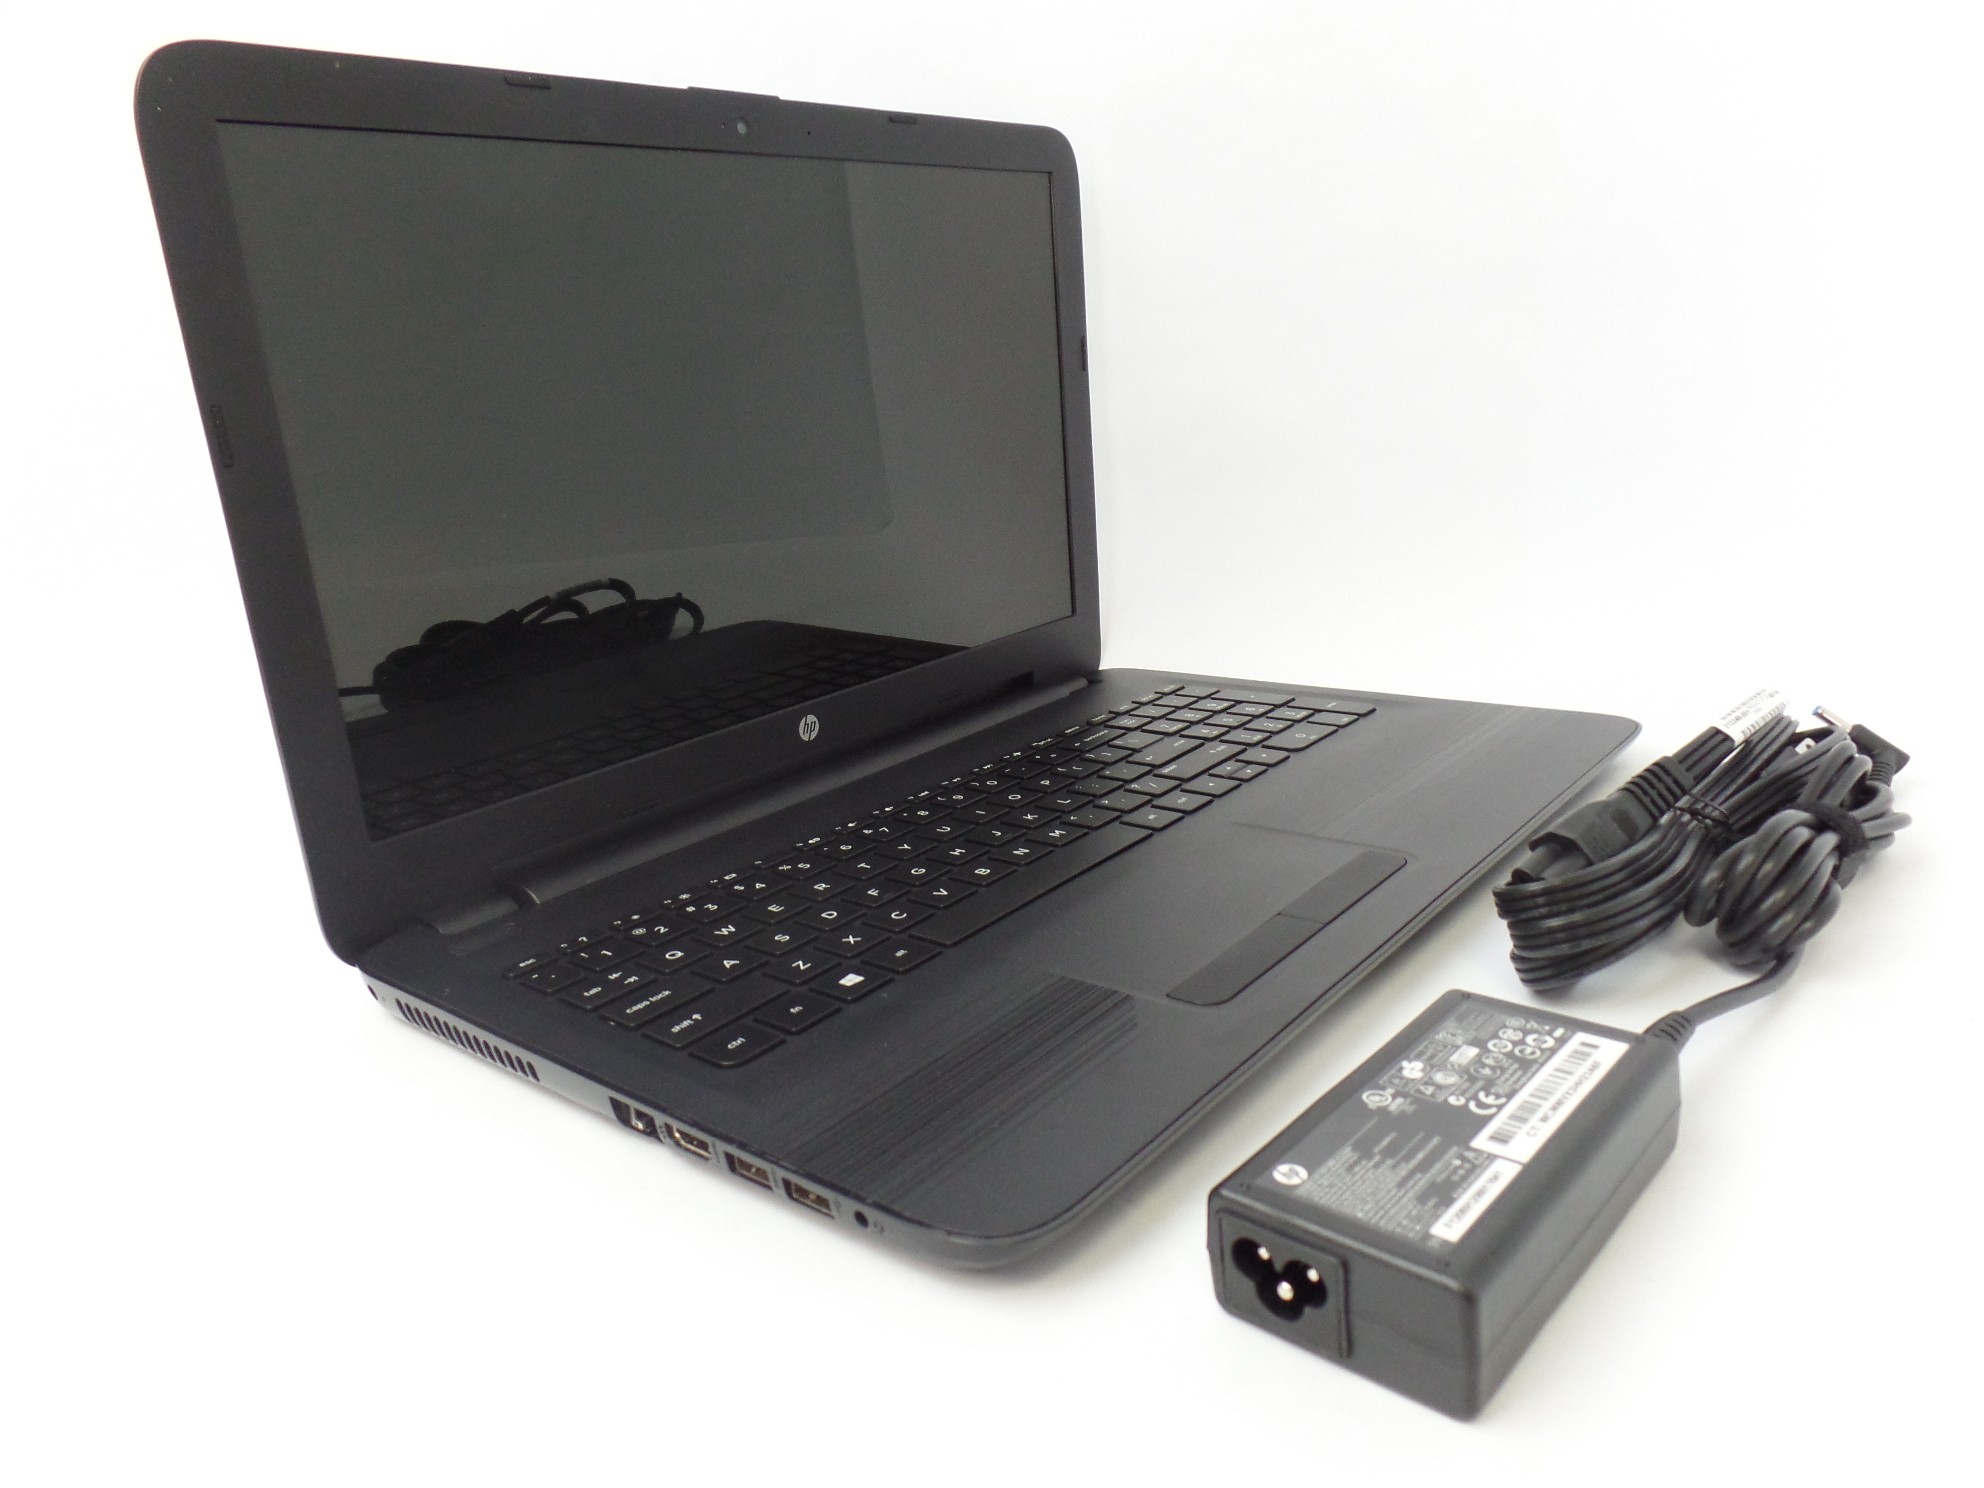 HP 15-ba009dx 15.6" HD AMD A6-7310 2.0GHz 4GB 500GB HDD W10H Laptop X7T78UA U